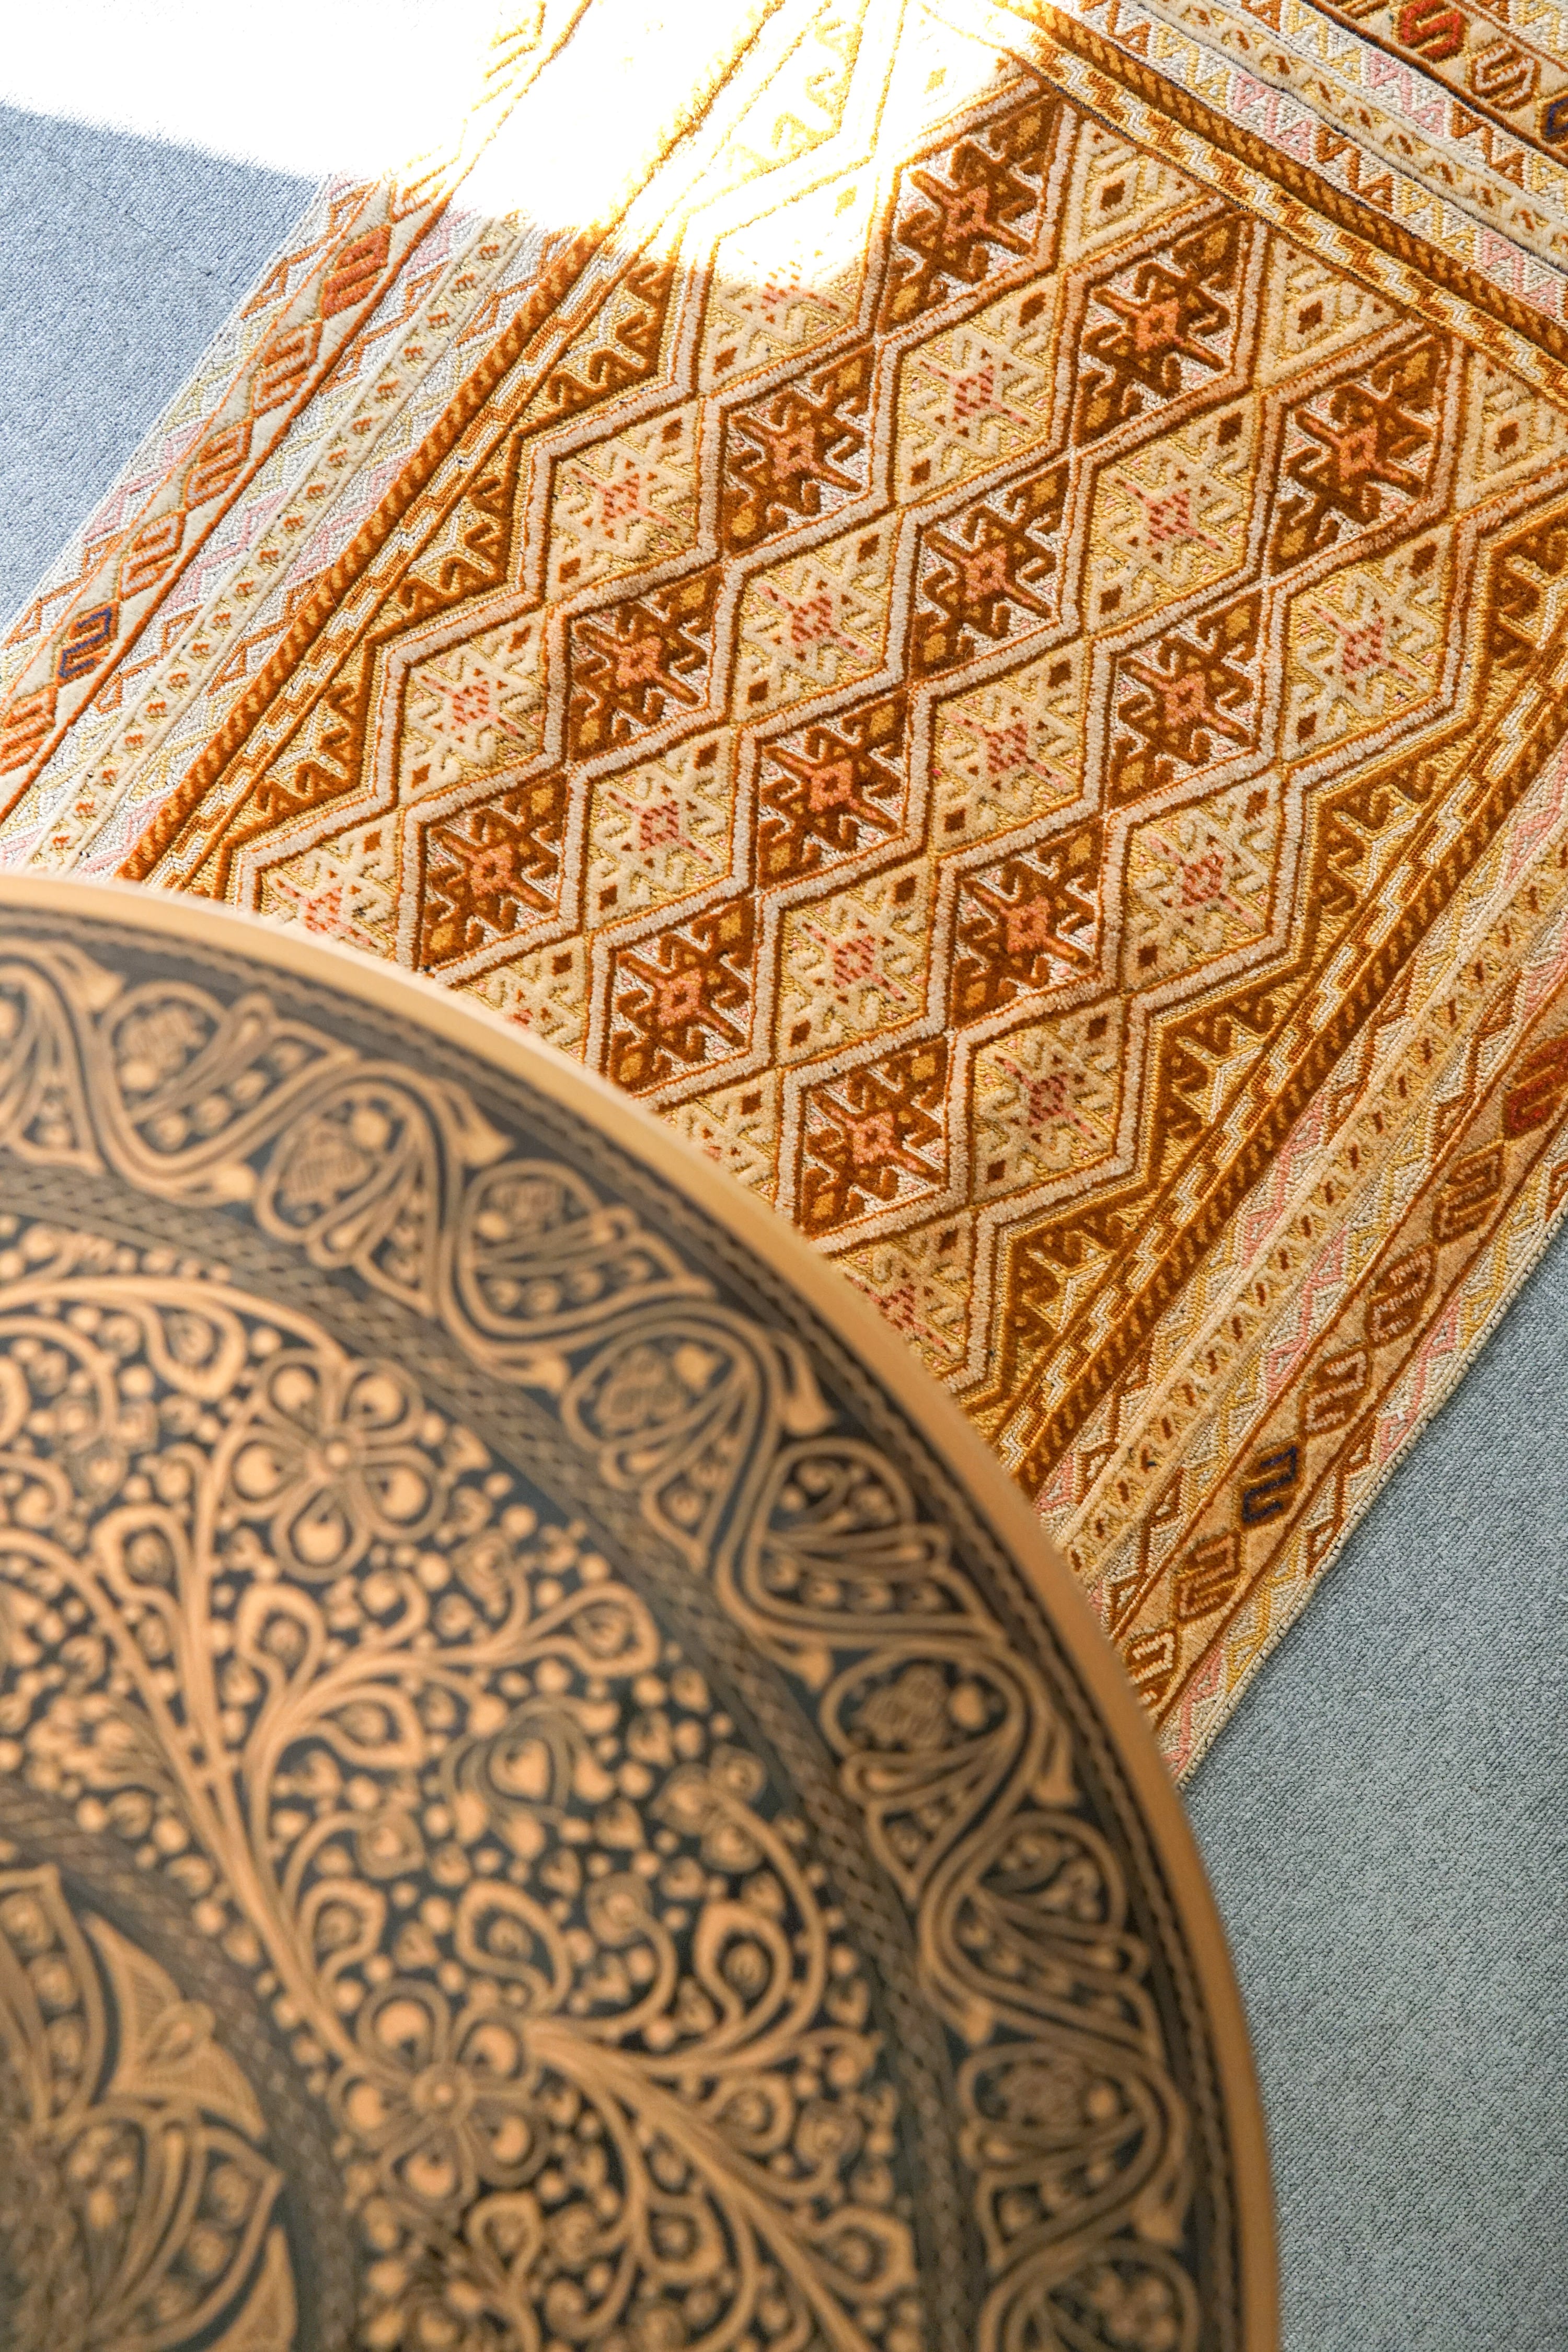 アフガニスタン マシュワニキリム 手織り絨毯 size:115㎝ × 76cm | www